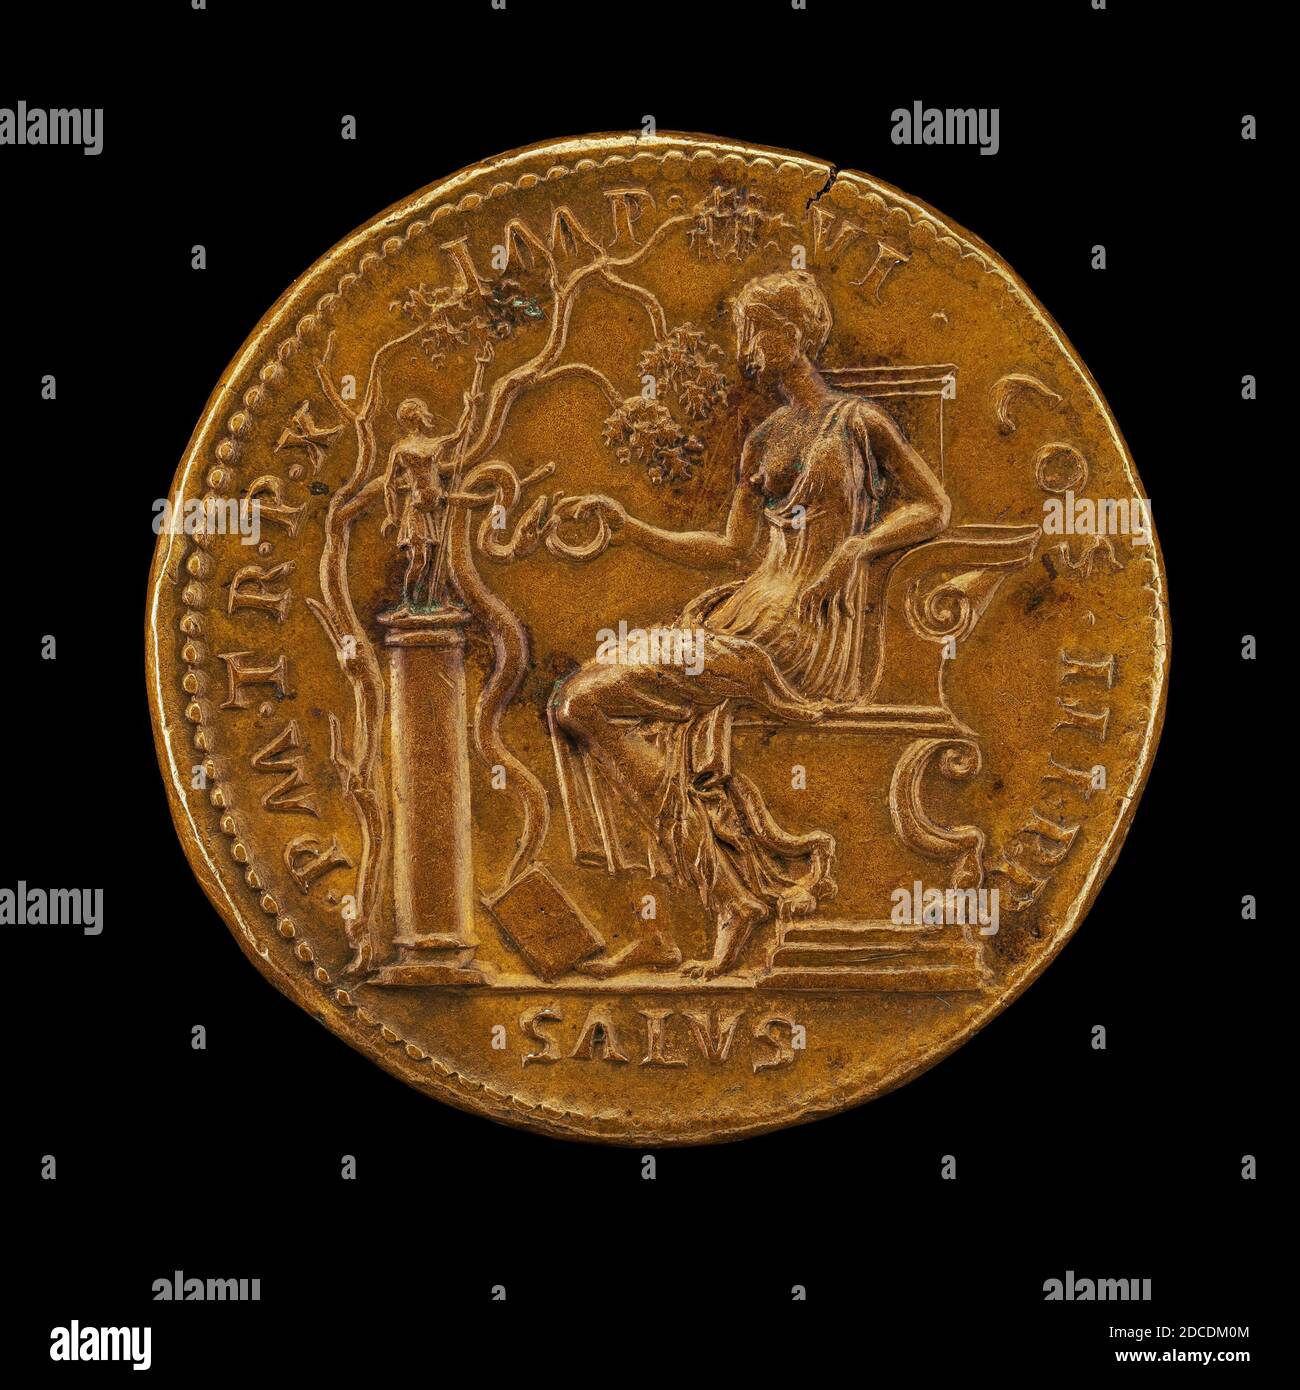 Giovanni da CAVINO, (artista), Paduan, 1500 - 1570, Salus e serpente, bronzo/colpito, totale (diametro): 3.85 cm (1 1/2 in.), peso lordo: 34.91 gr (0.077 lb.), asse: 6:00 Foto Stock